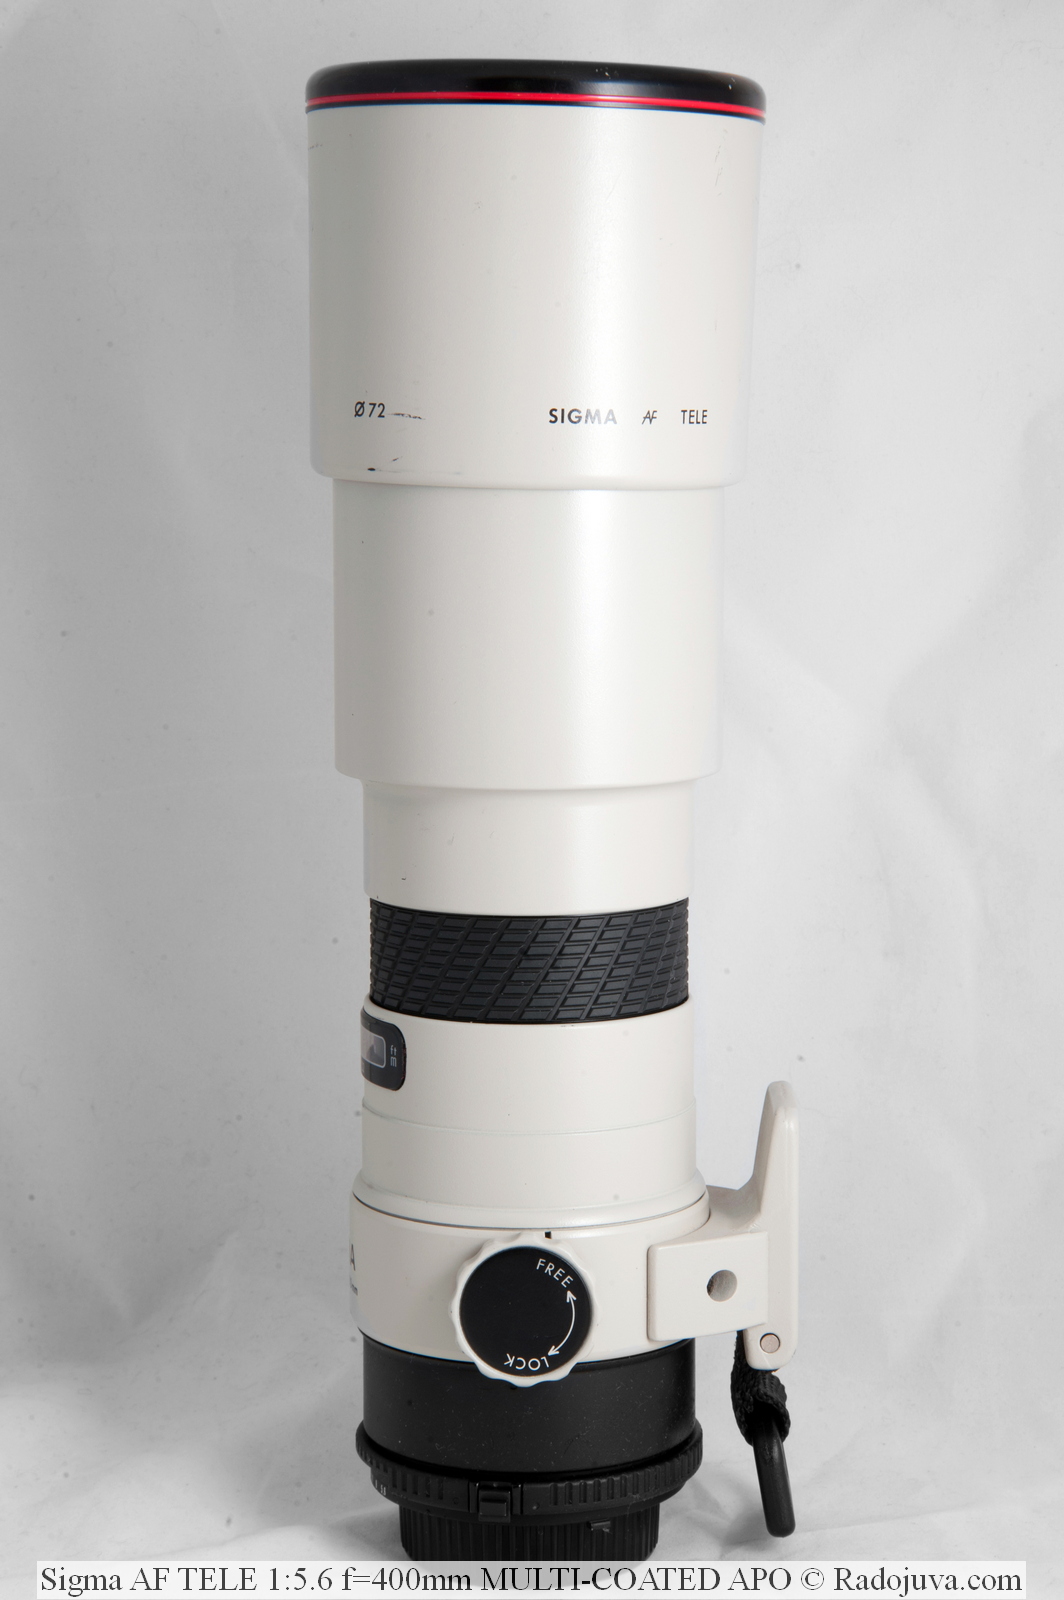 SIGMA AF 400 mm f / 5.6 APO TELE